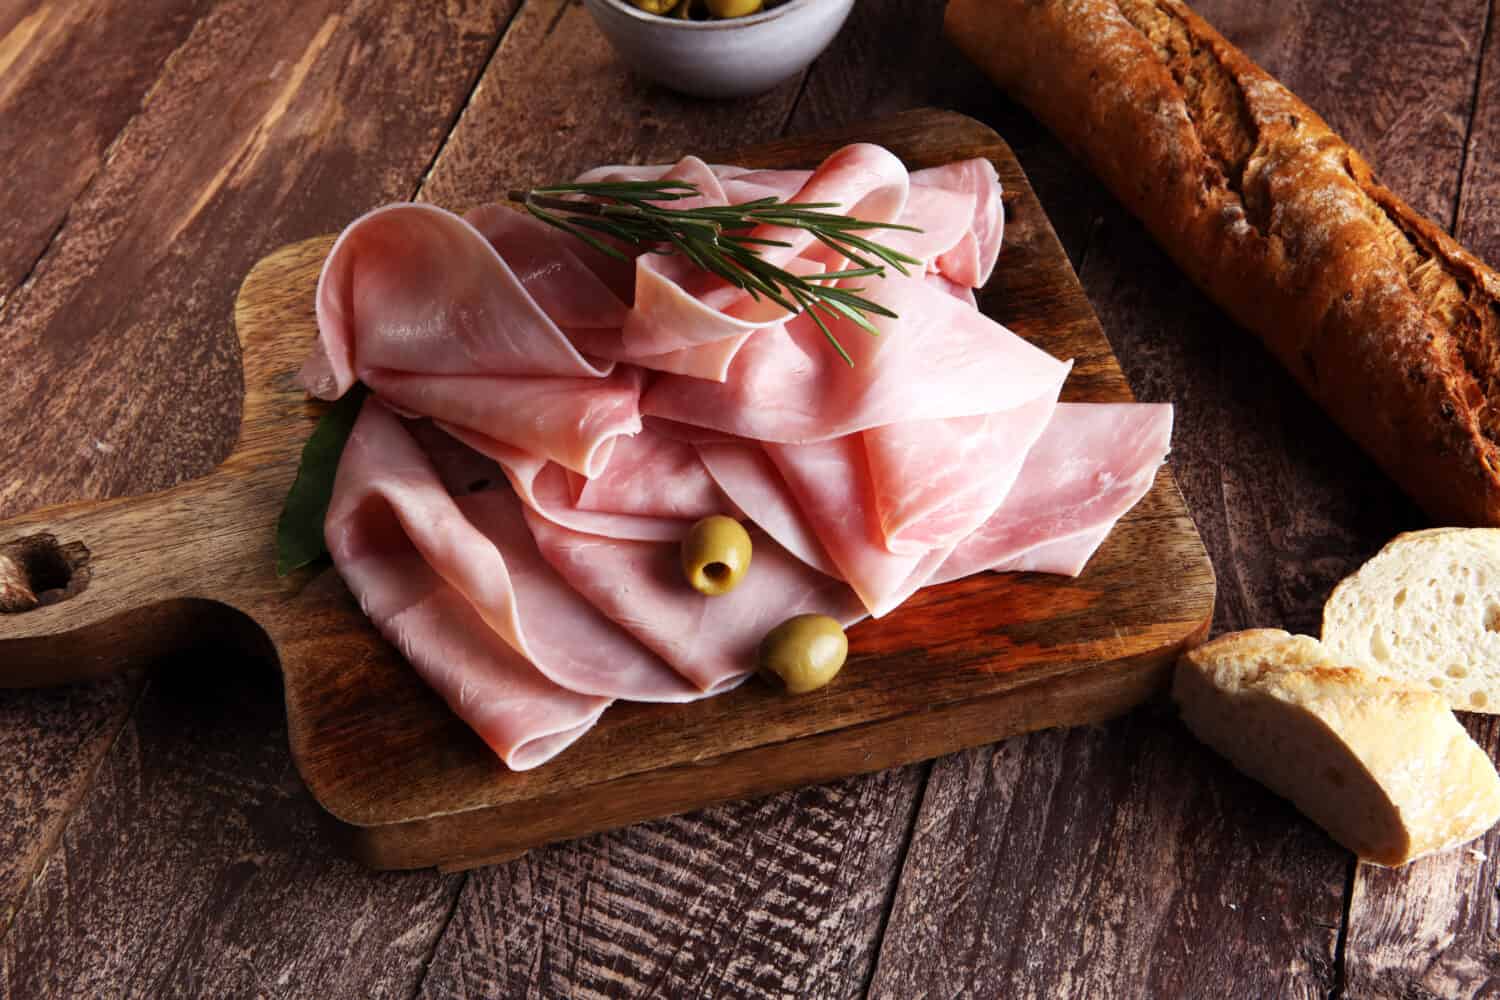 Sliced ham on wooden background. Fresh prosciutto. Pork ham sliced.